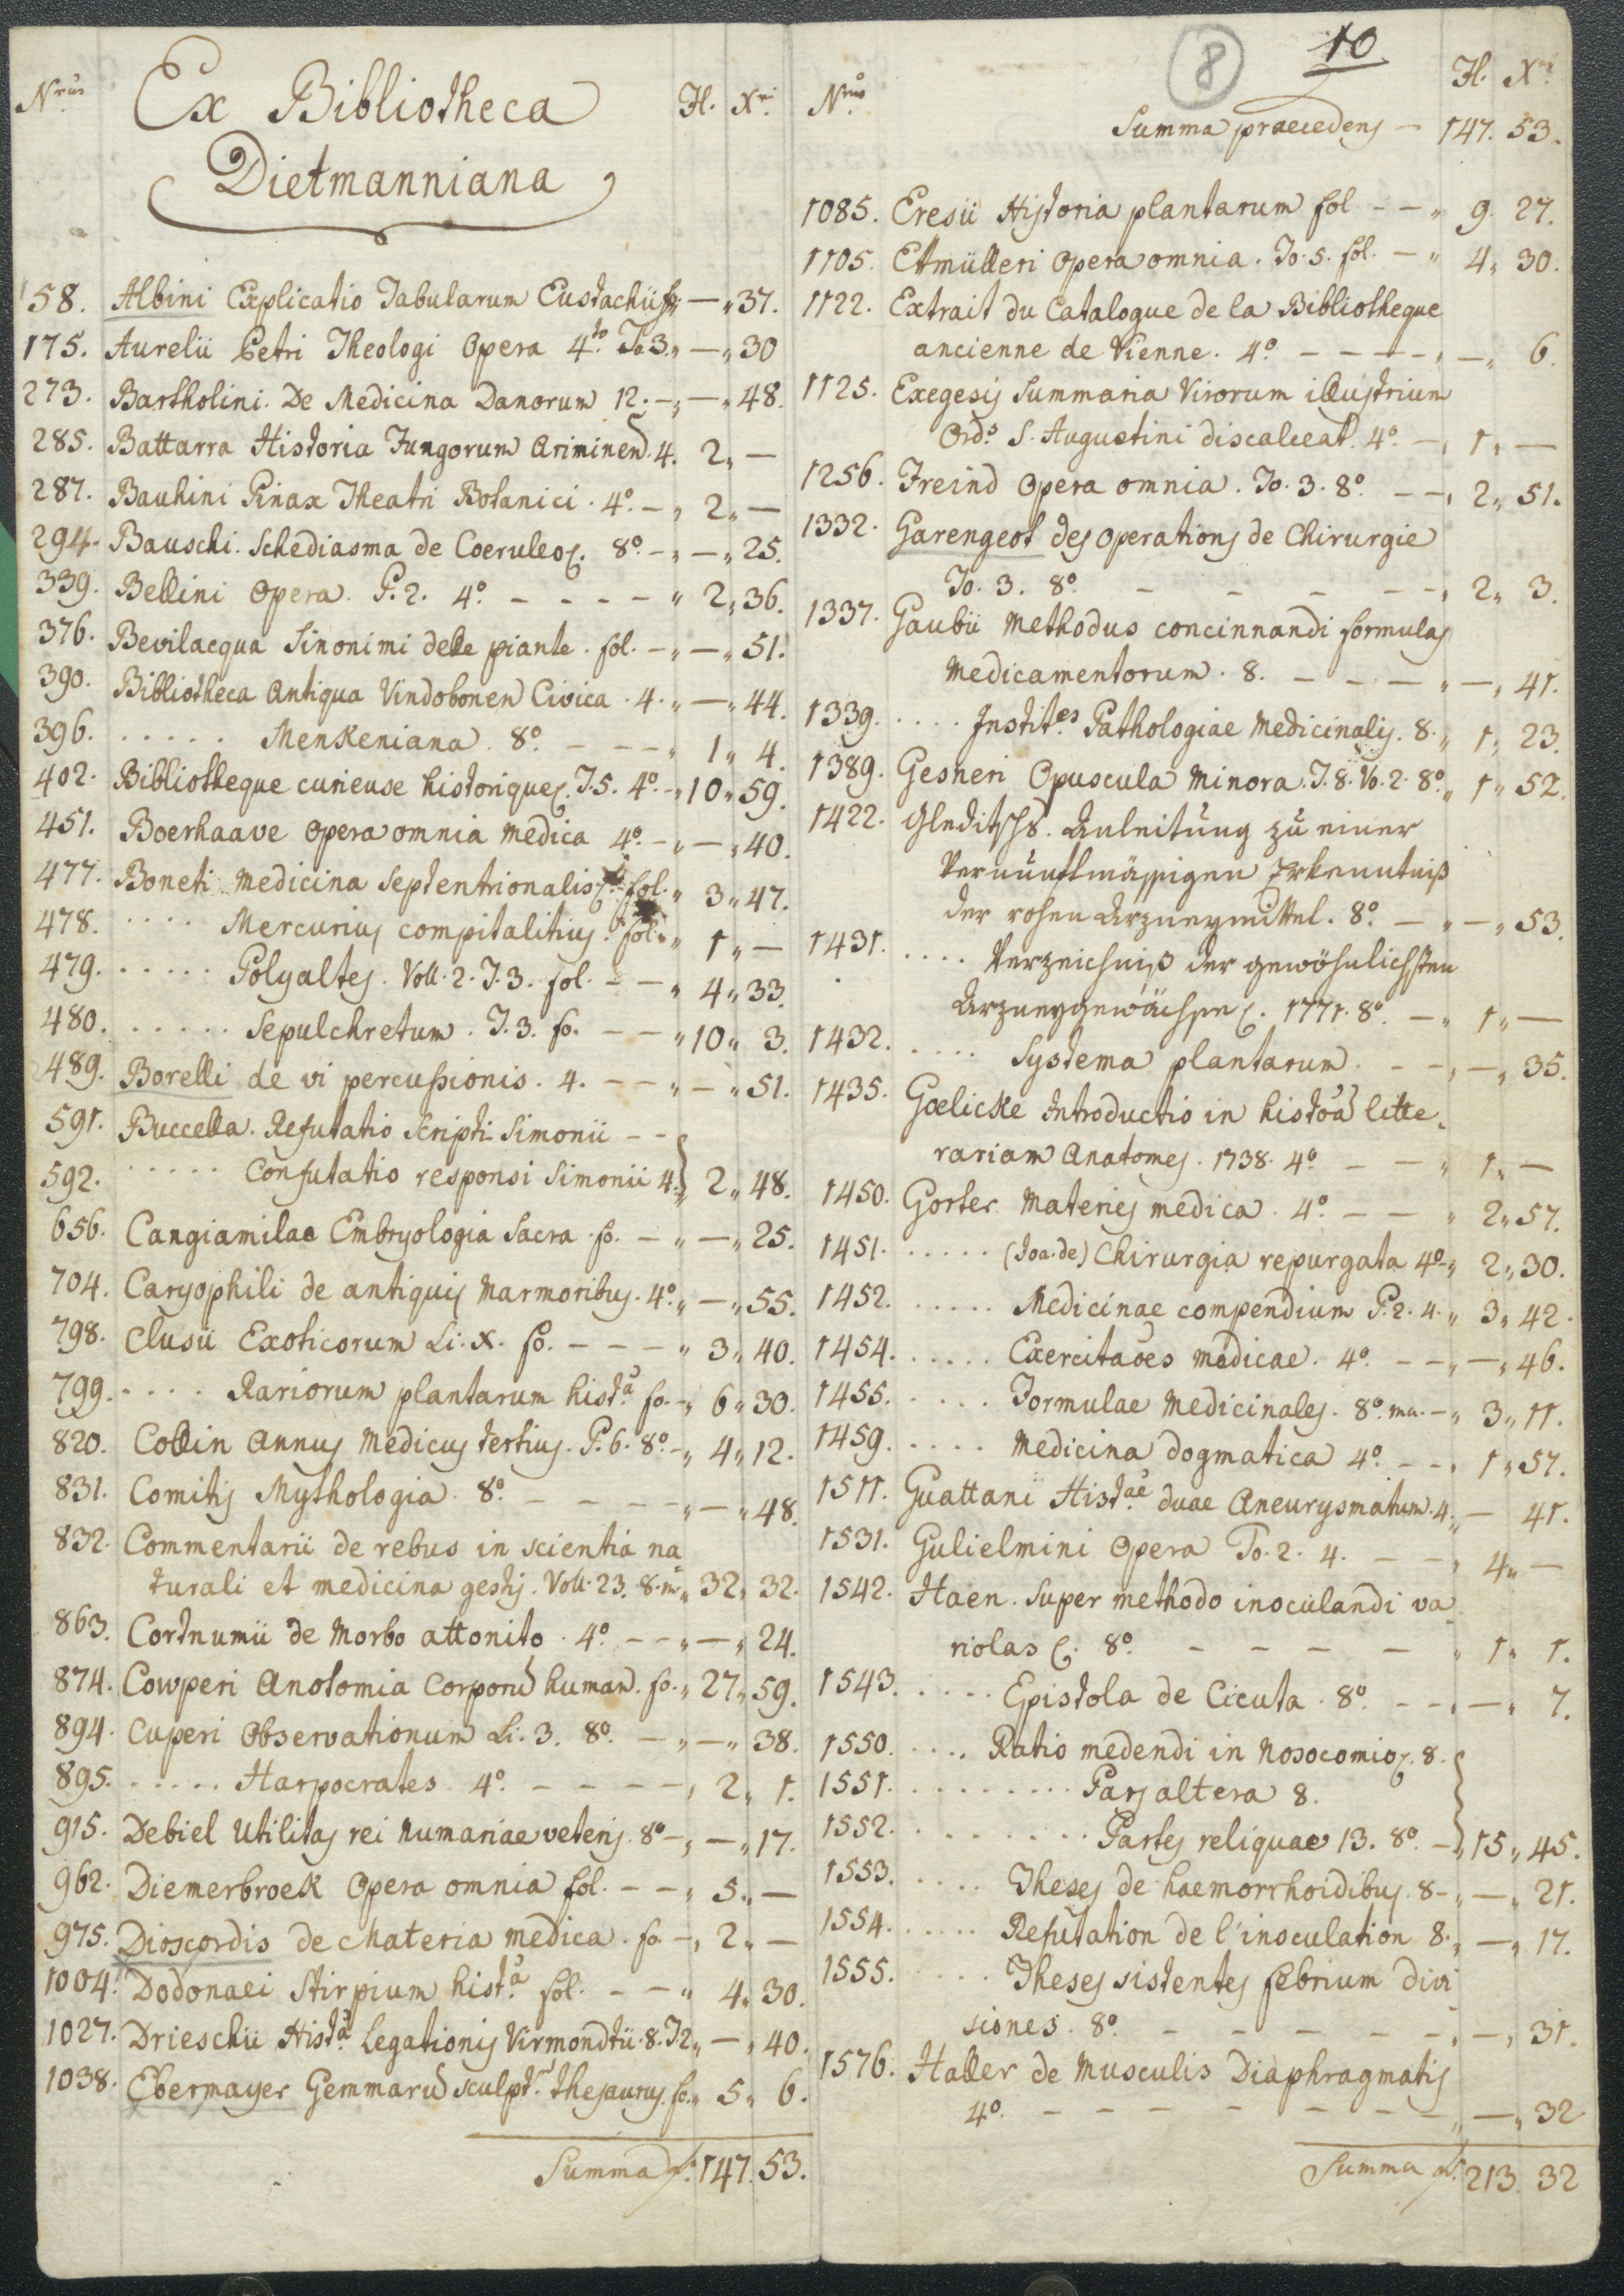 Johann Maximilian Joseph Dietmann könyvtárából 1782-ben vásárolt könyvek listája. 